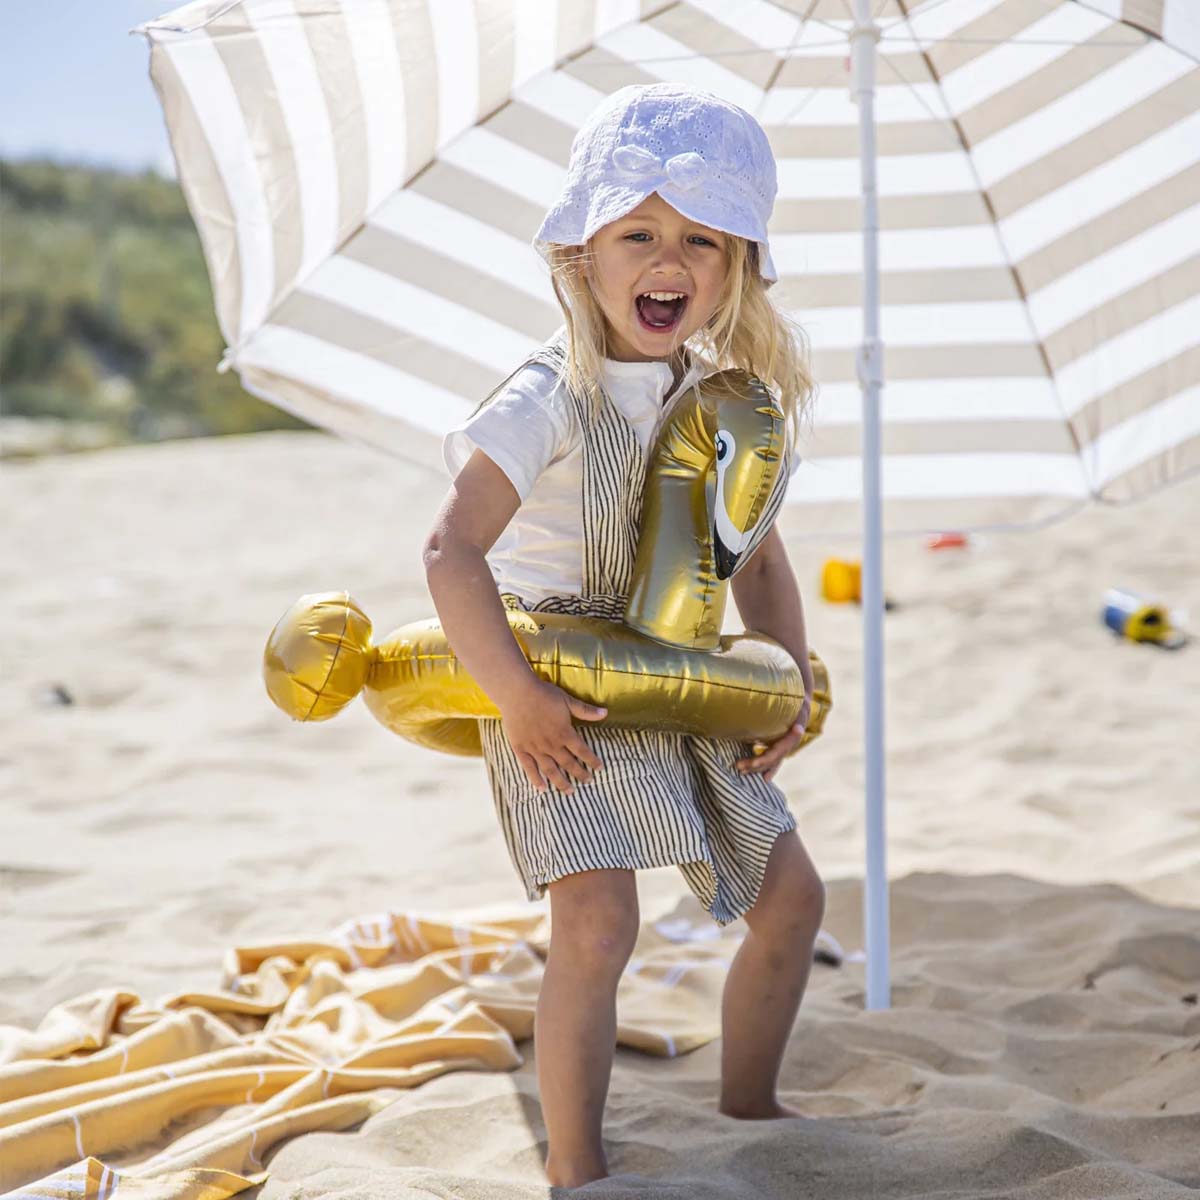 De Swim Essentials split zwemband 56 cm gold swan is het perfecte accessoire voor jouw kindje tijdens een dagje bij het zwembad of de zee. Deze leuke zwemband heeft de looks van een gouden zwaan. VanZus.